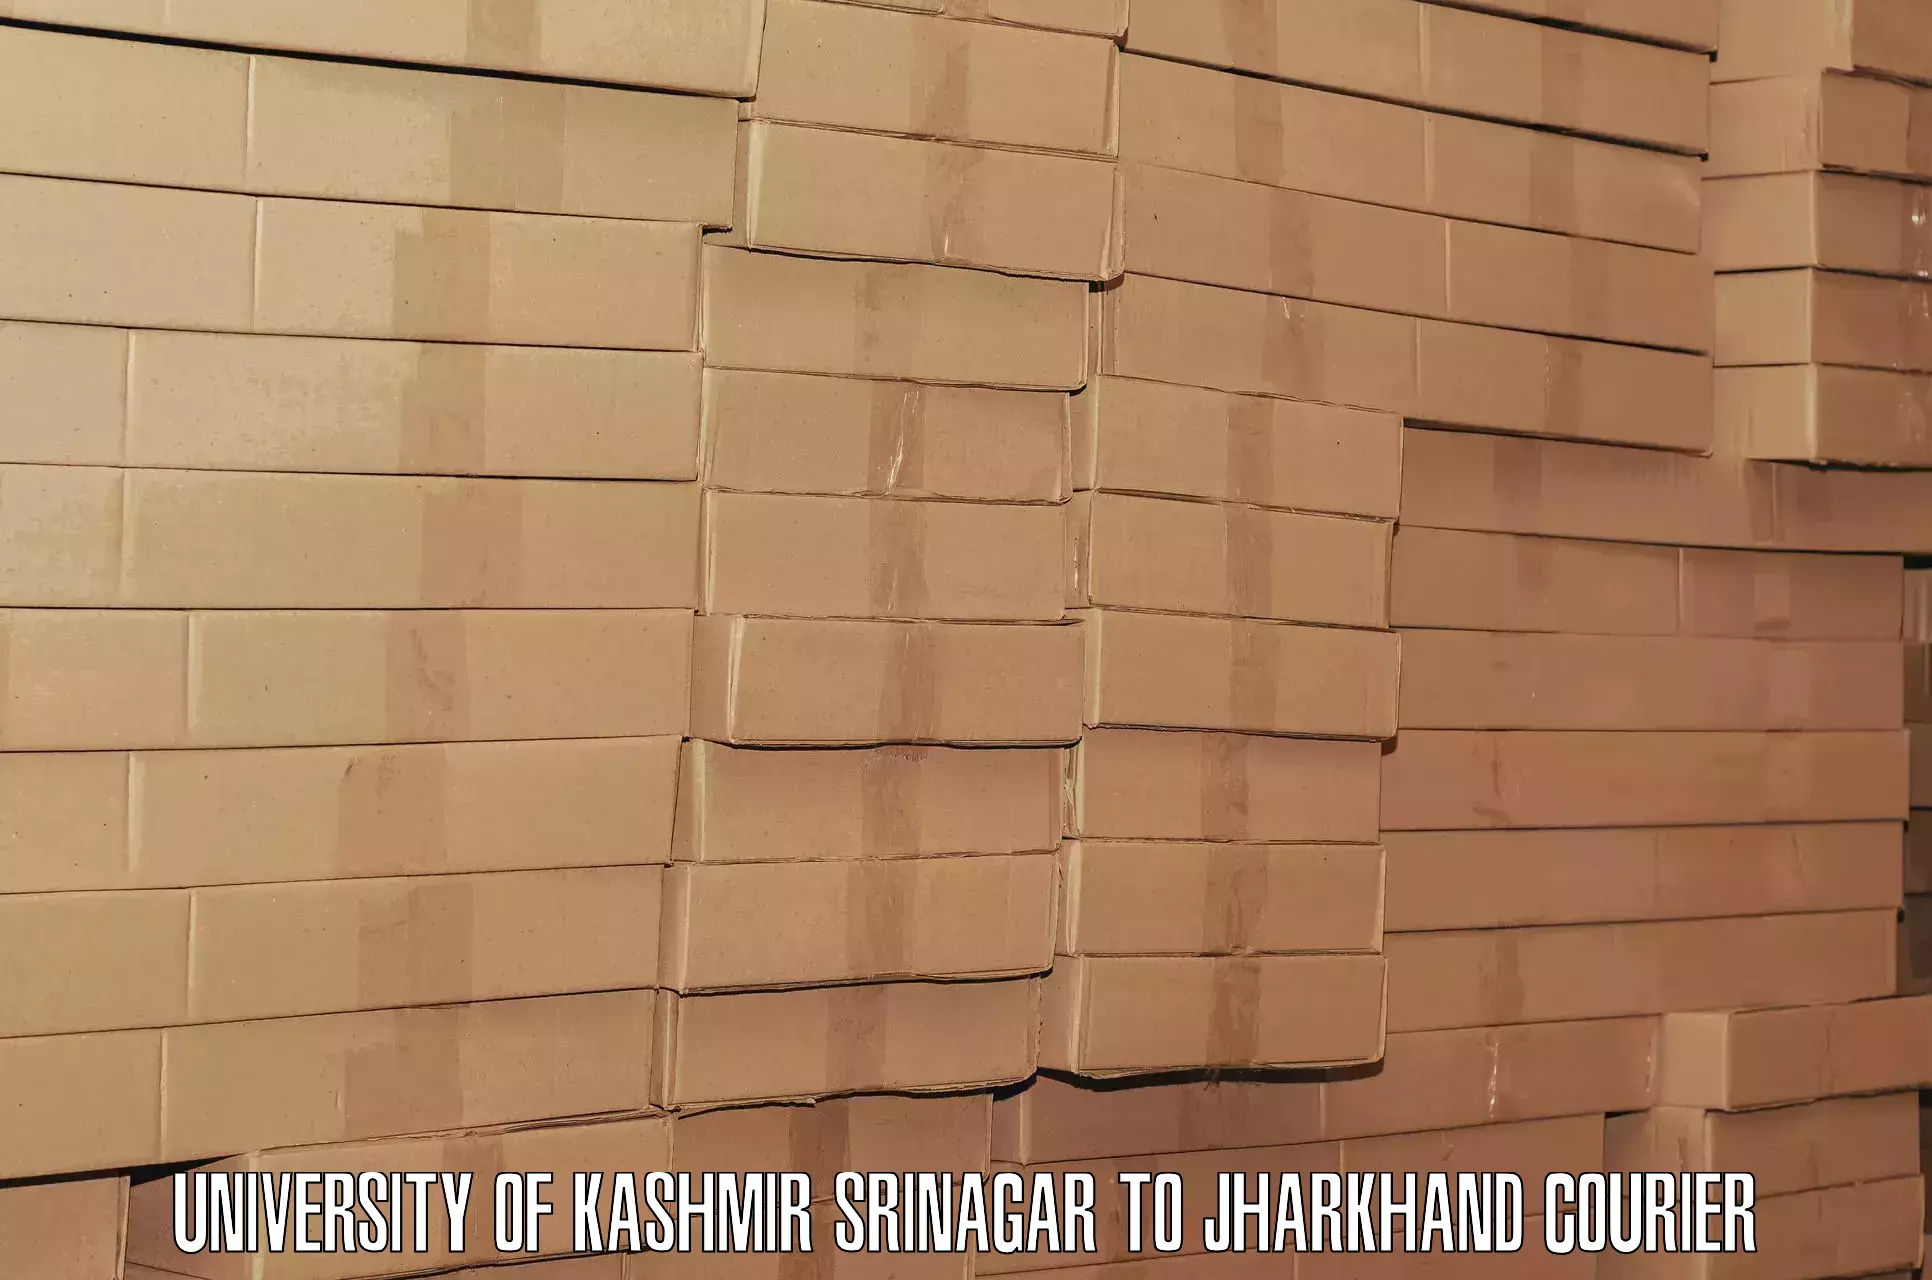 Baggage transport scheduler in University of Kashmir Srinagar to Peterbar